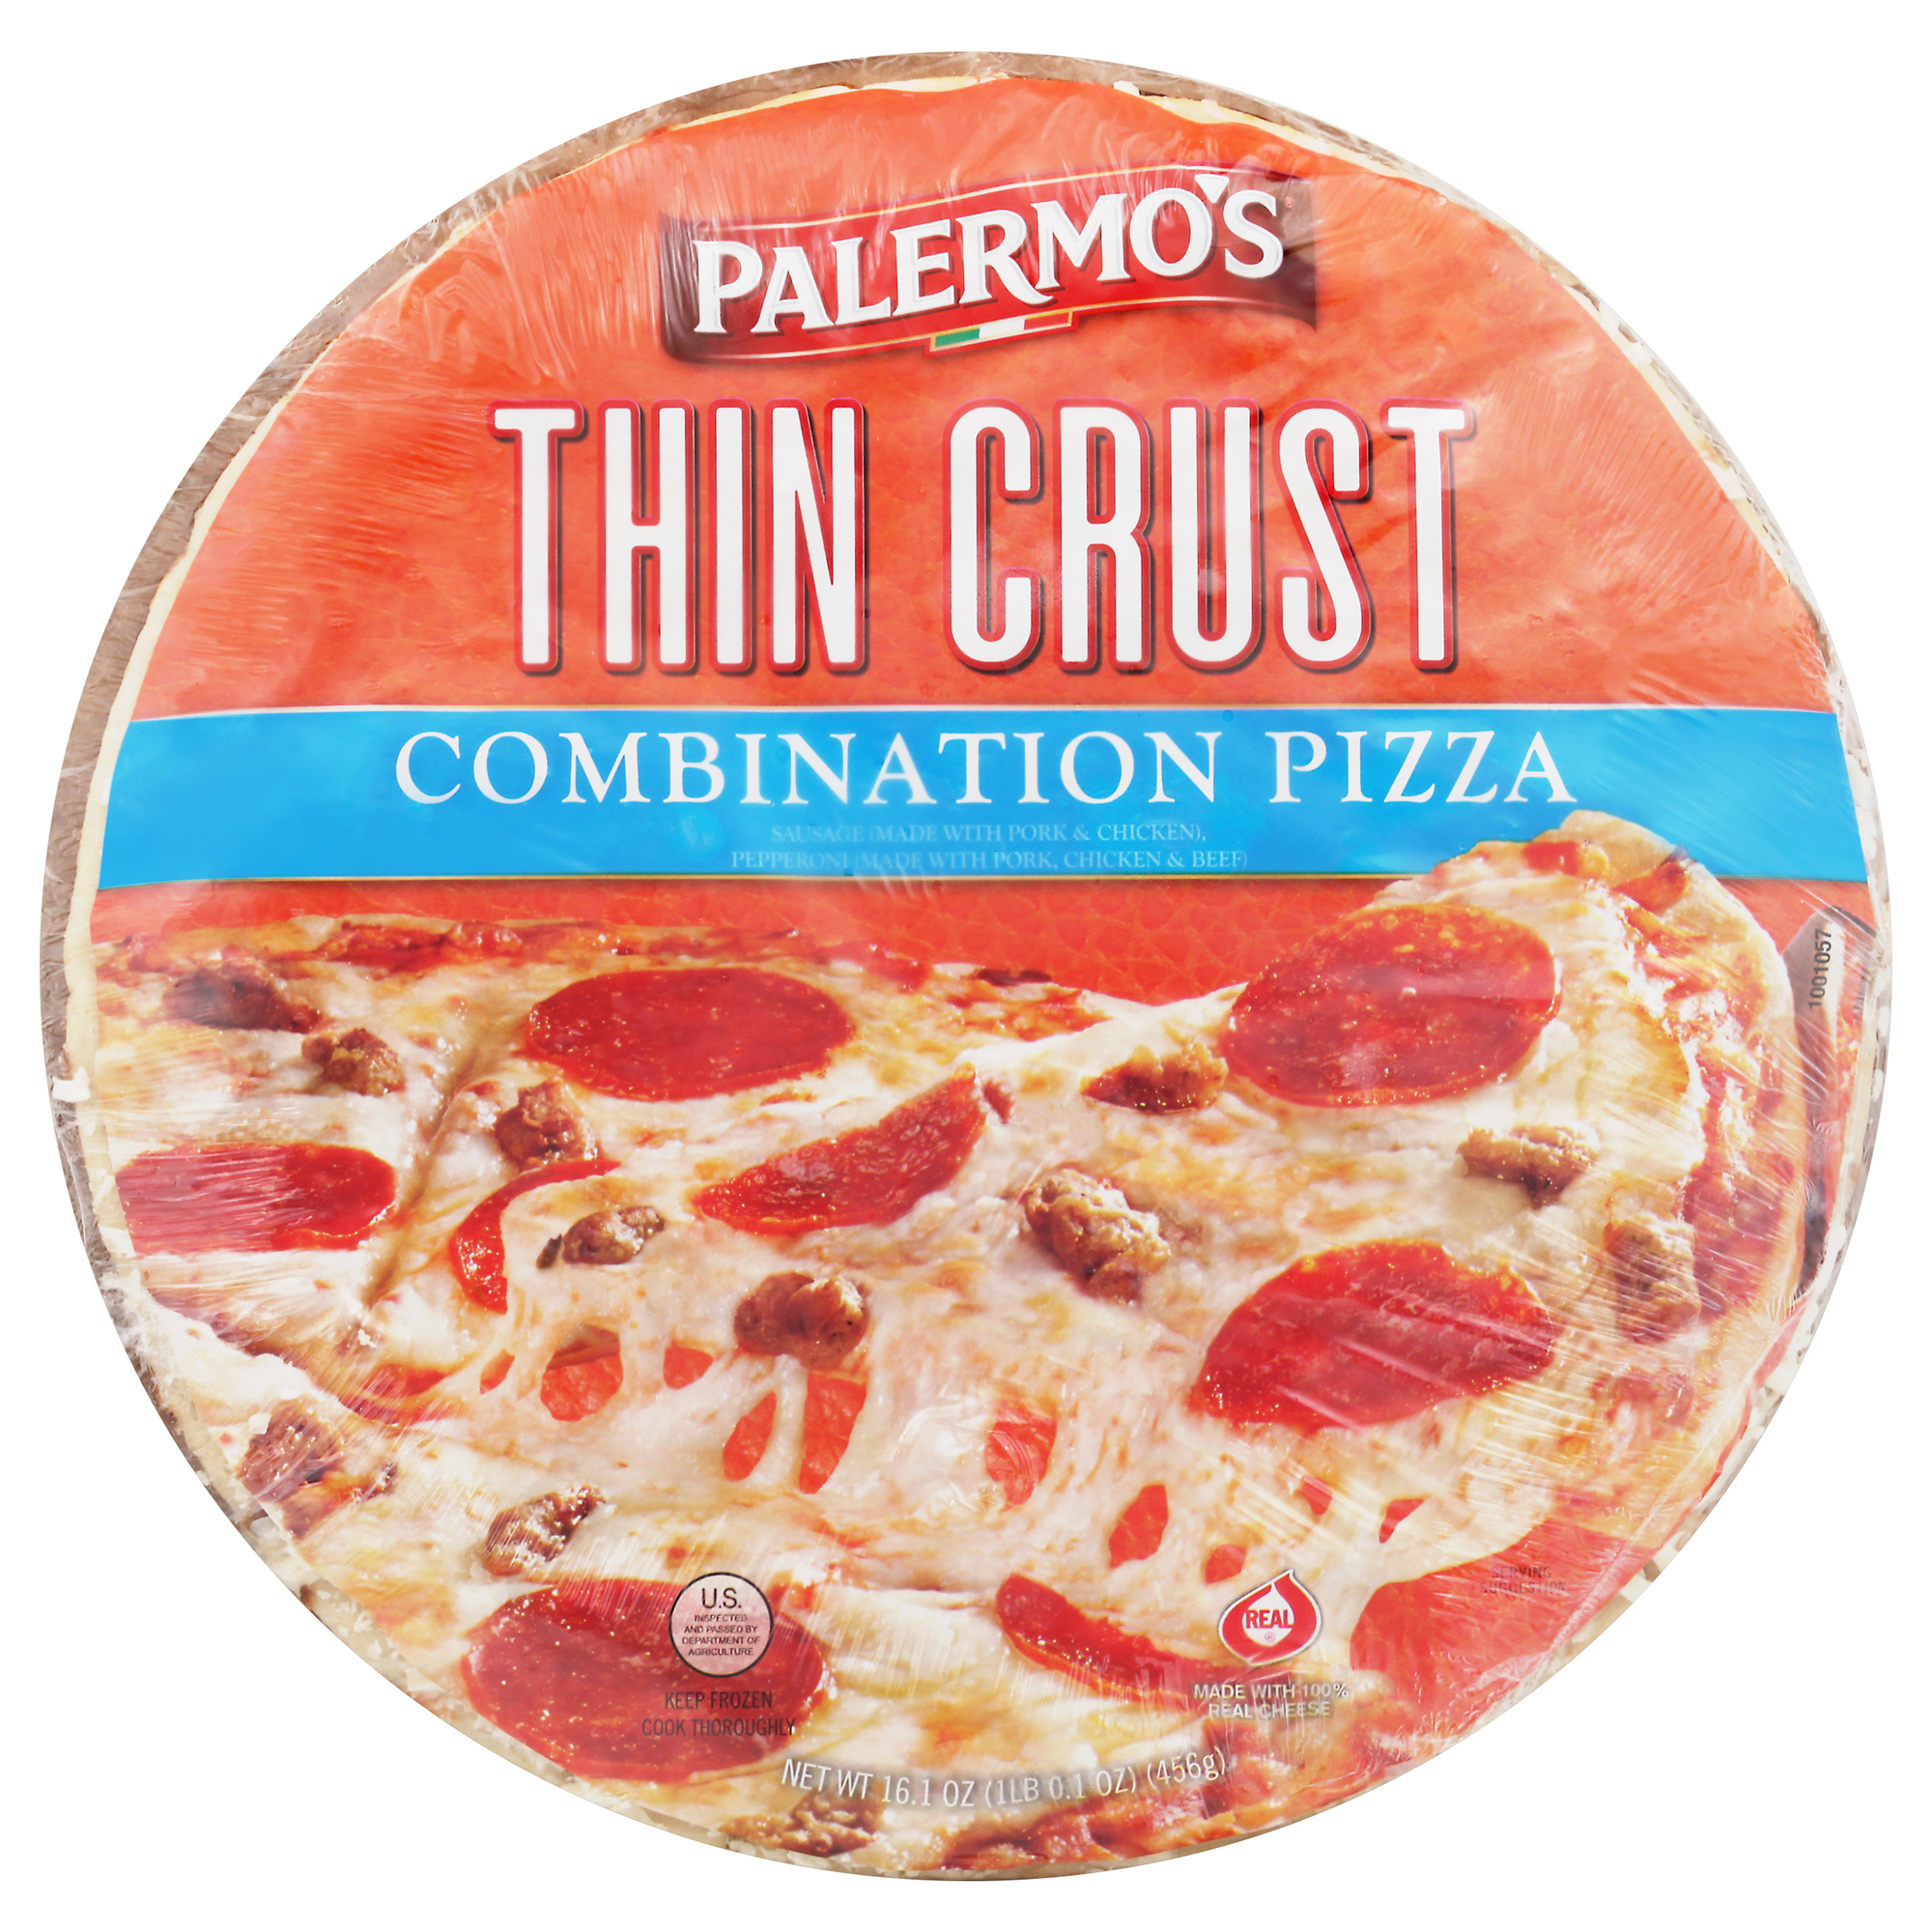 Palermo's Thin Crust Combination Pizza 12 units per case 16.1 oz